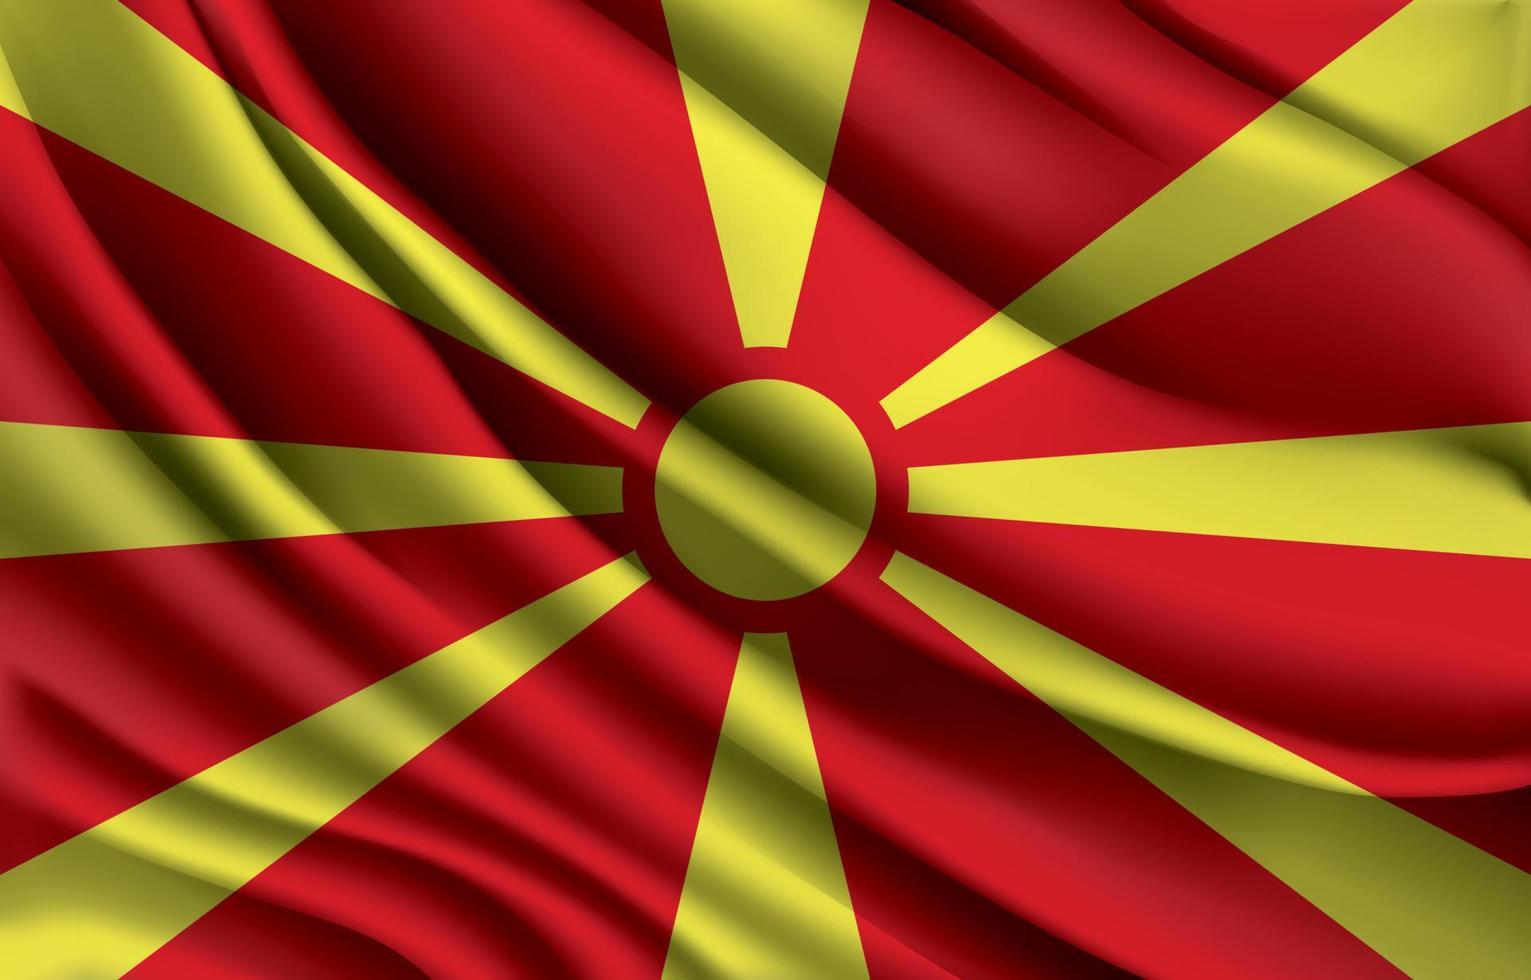 bandiera nazionale della macedonia del nord che sventola un'illustrazione vettoriale realistica